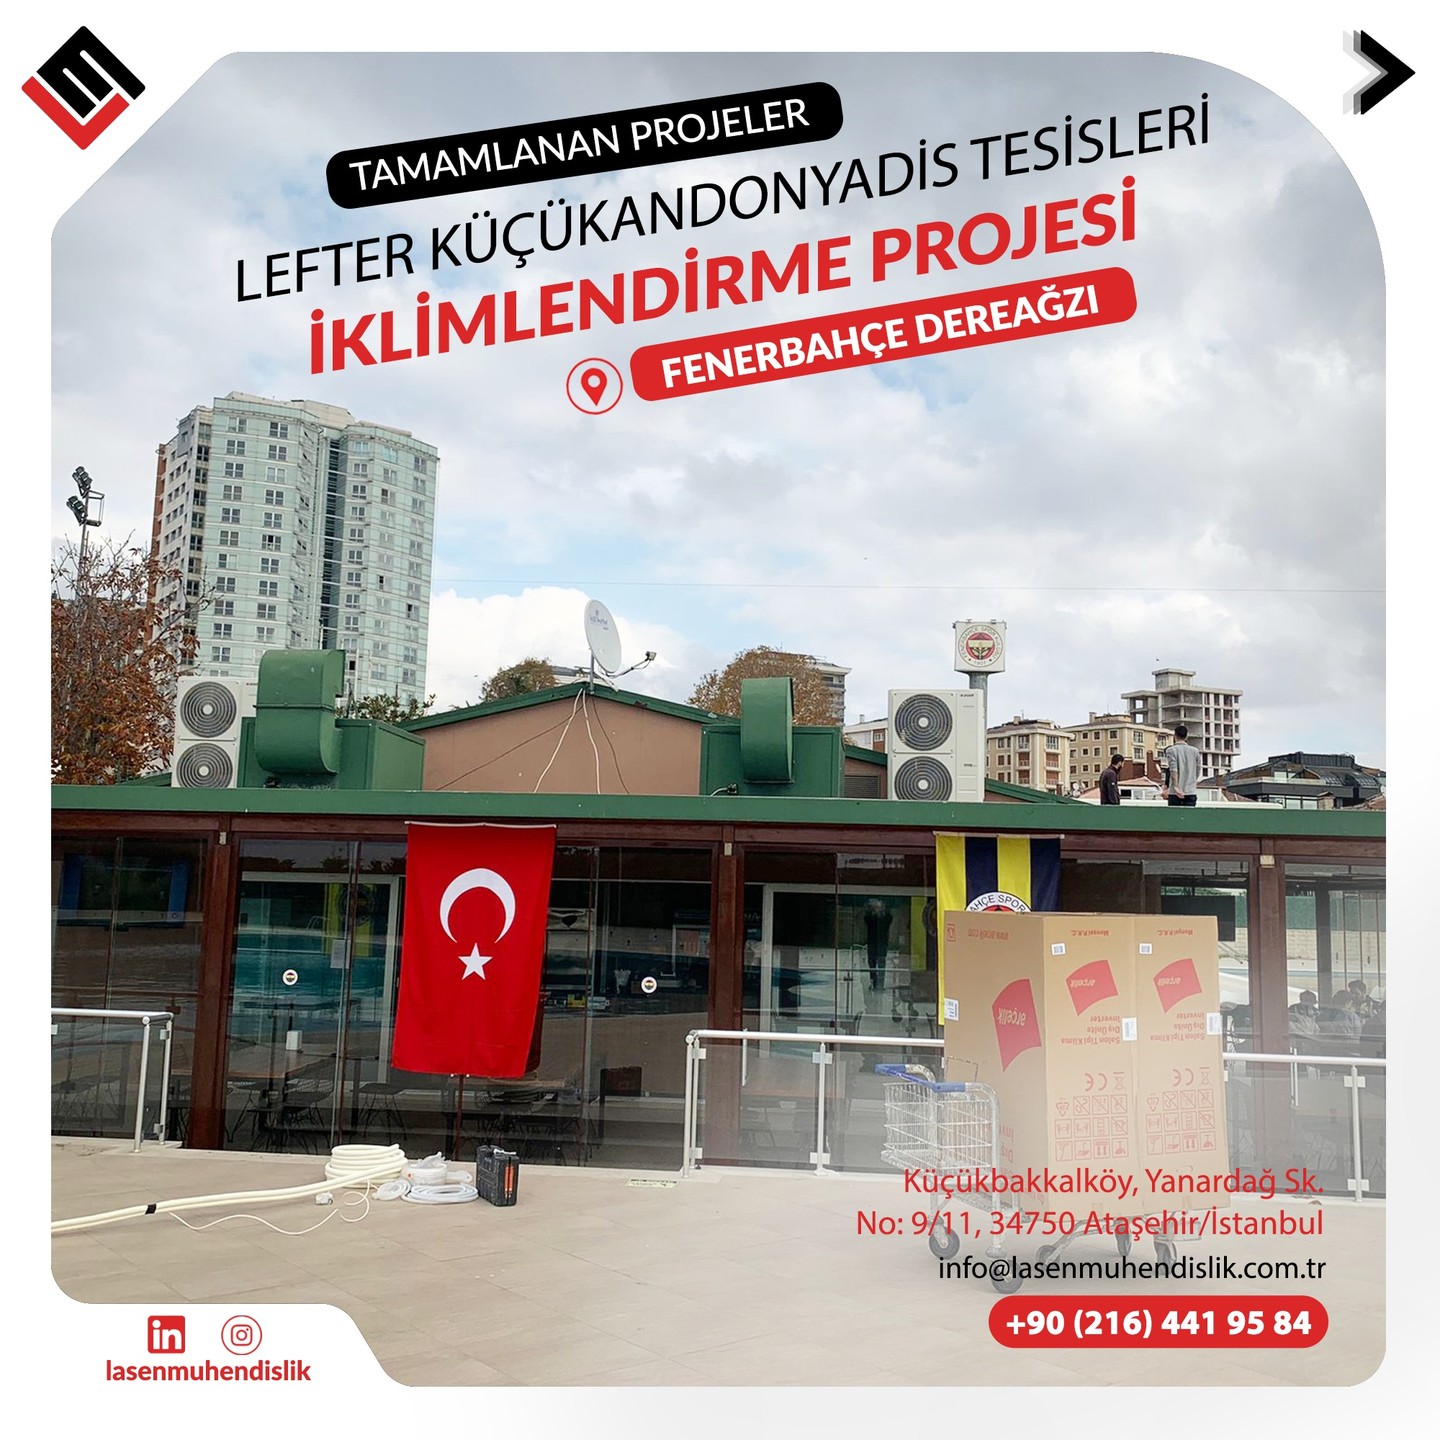 Fenerbahçe Dereağzı Lefter Küçükandonyadis Tesisleri Havuz Kafe Bölümü İklimlendirme Projesi Tamamlanmıştır.